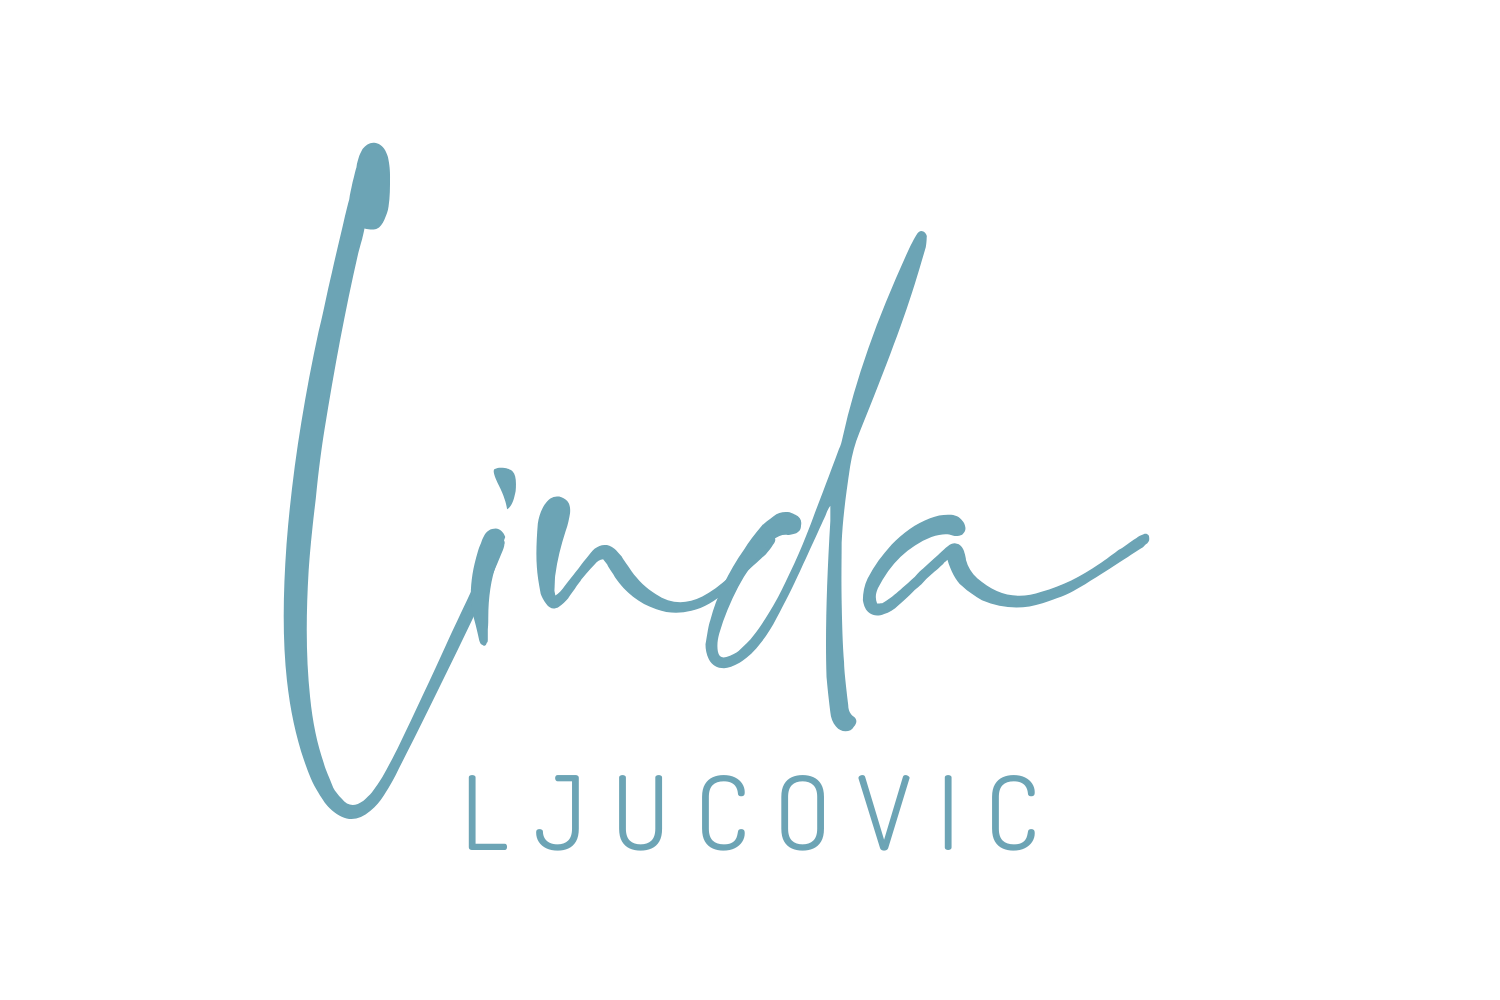 Linda Ljucovic